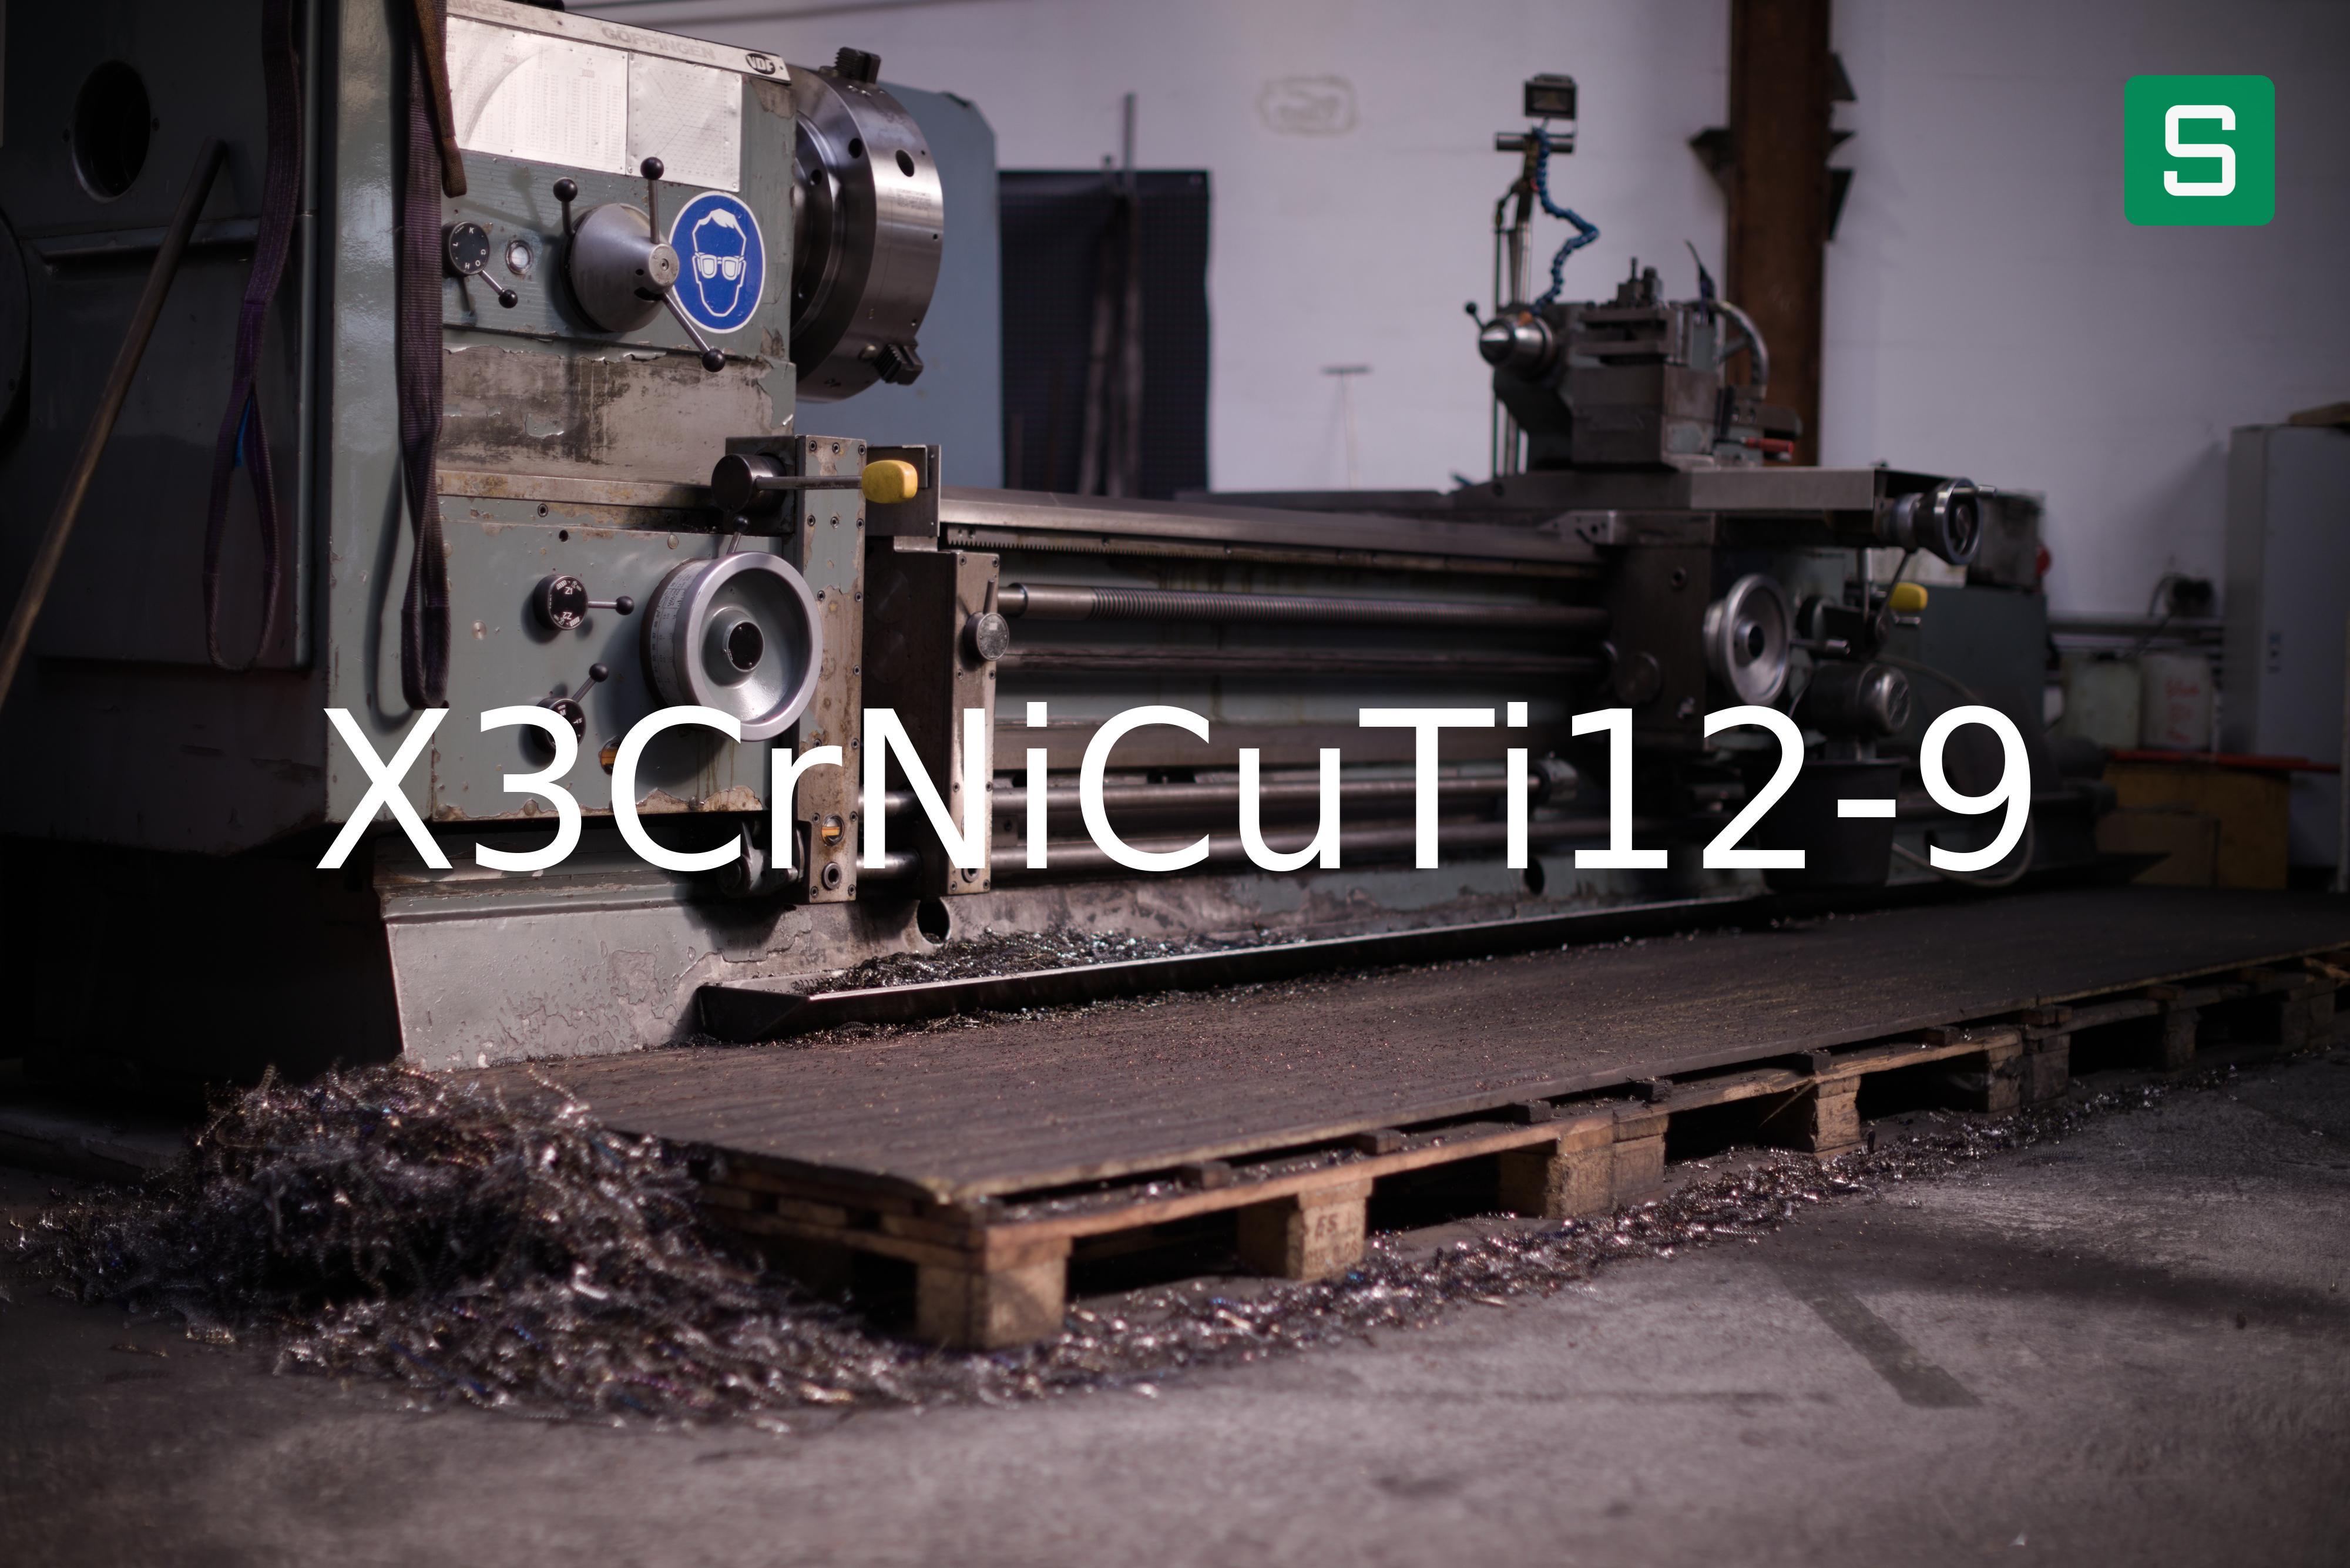 Steel Material: X3CrNiCuTi12-9